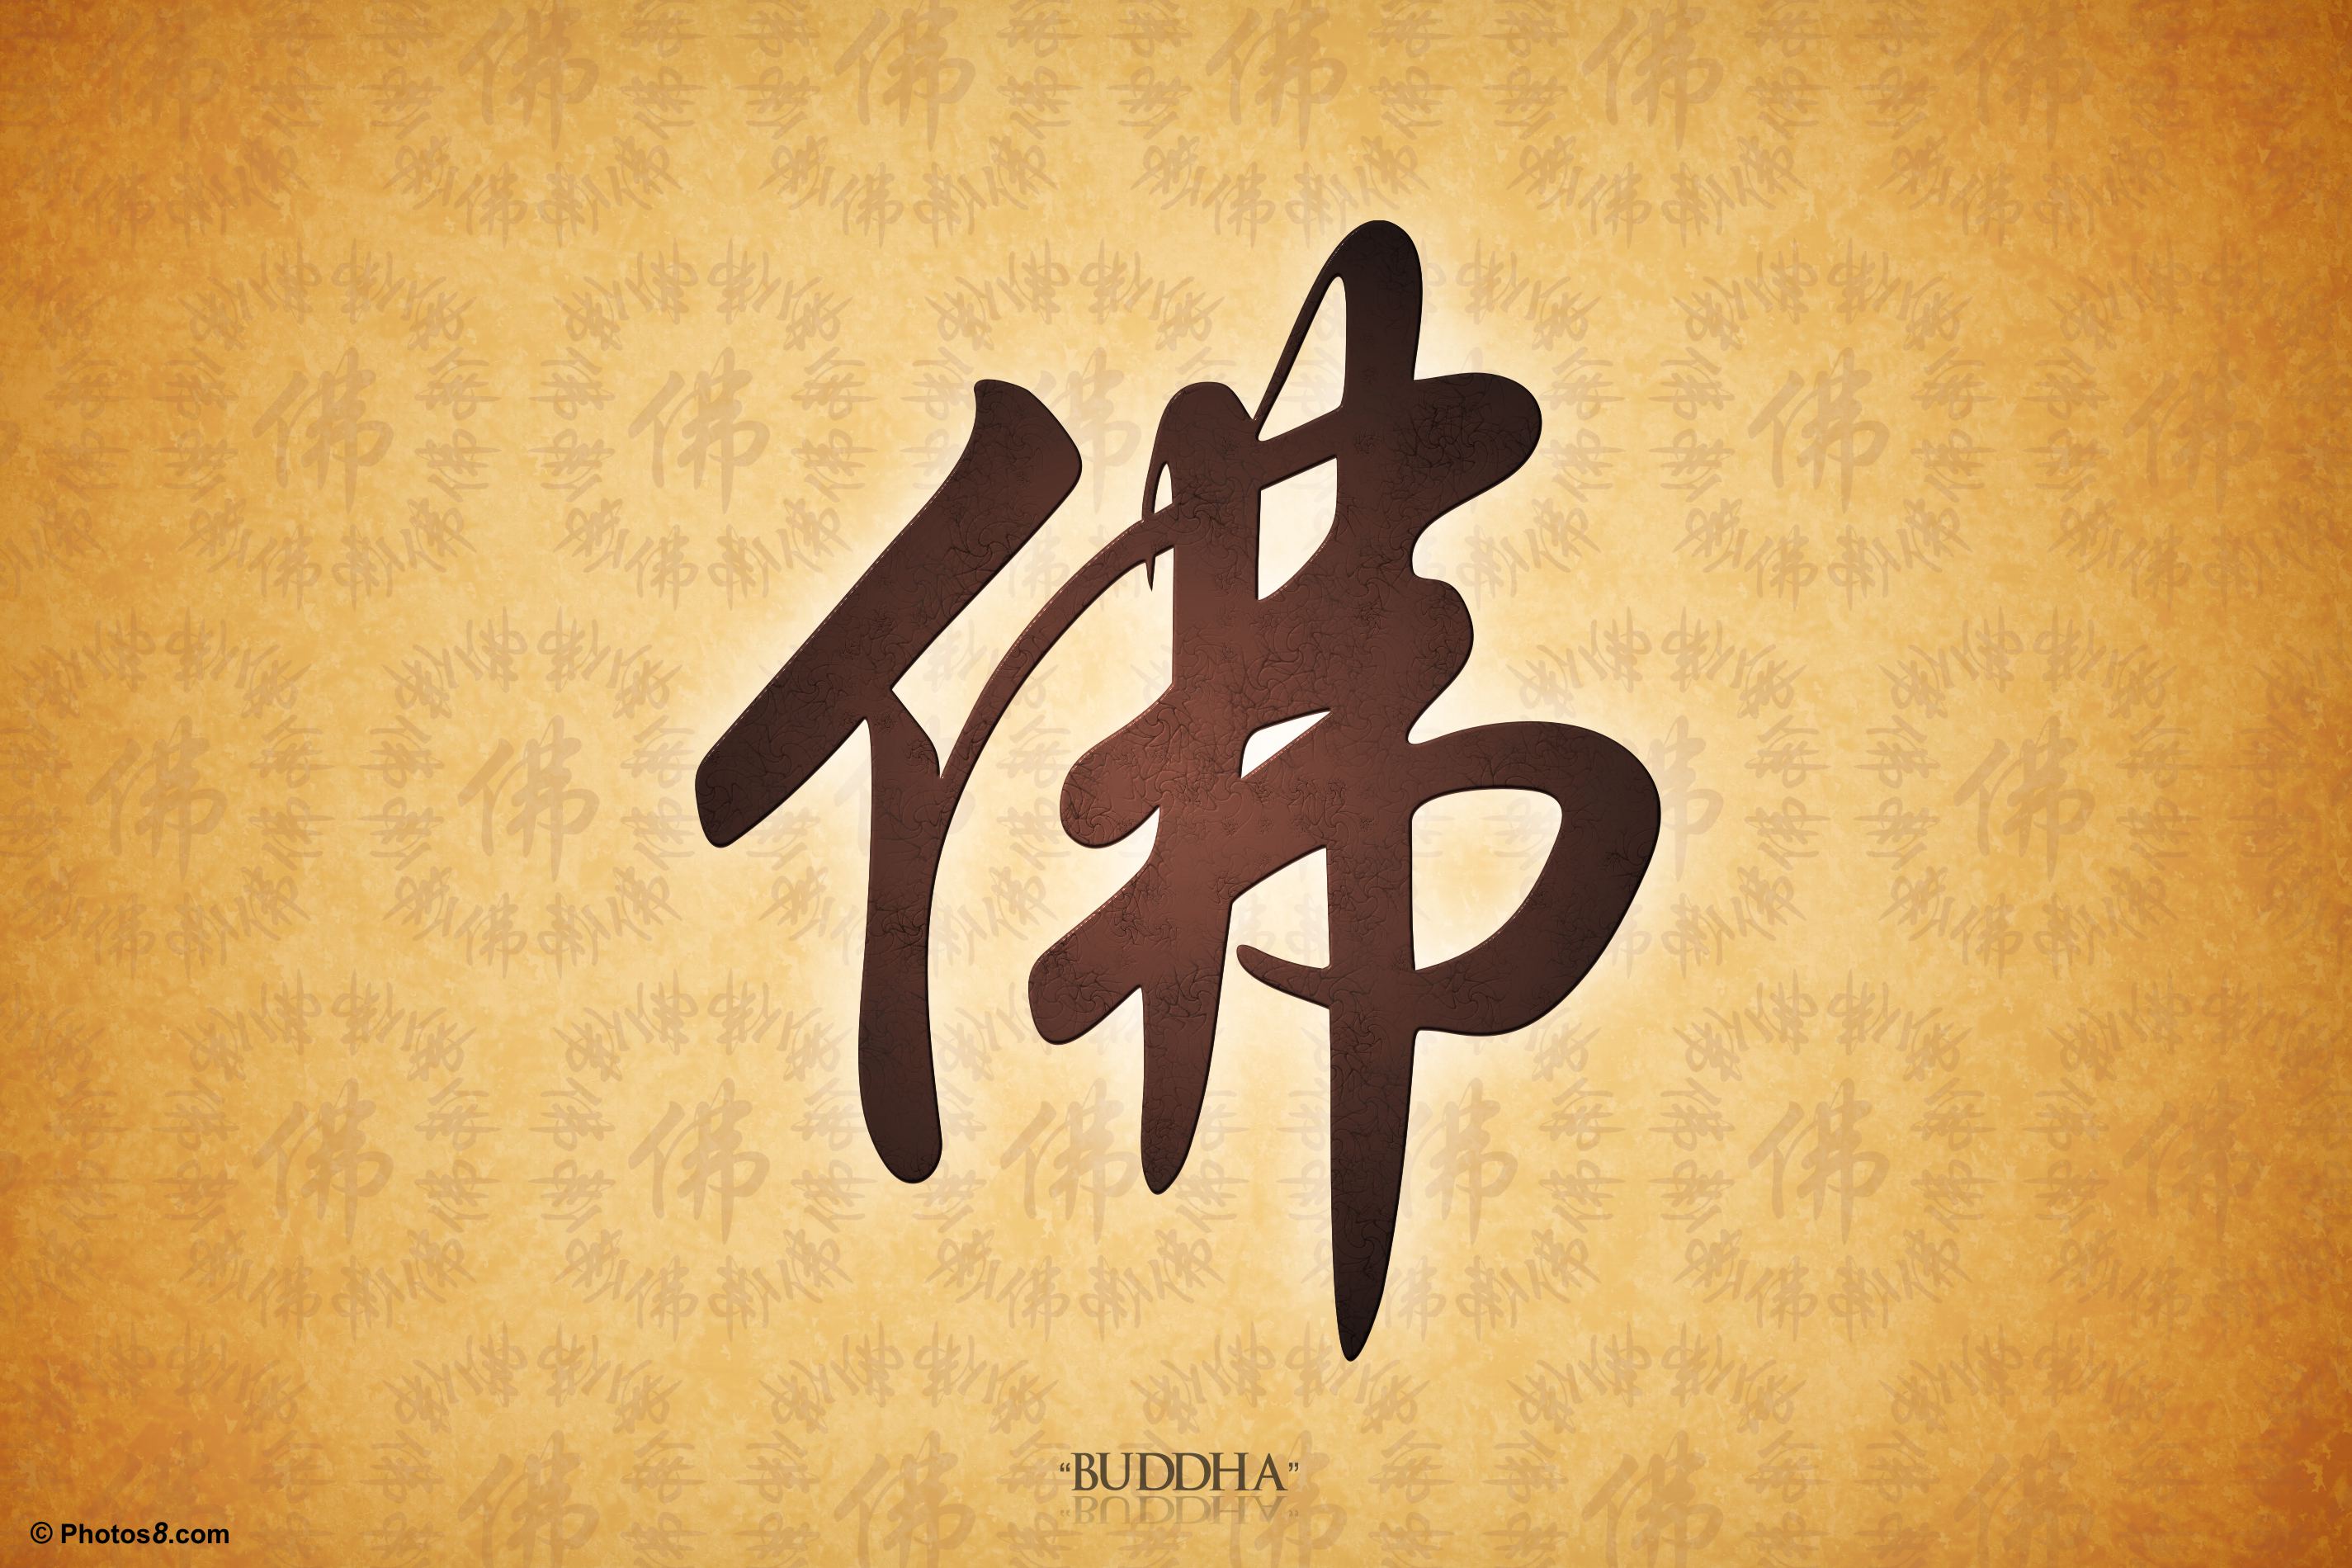 중국 상징 벽지,달필,폰트,본문,미술,제도법